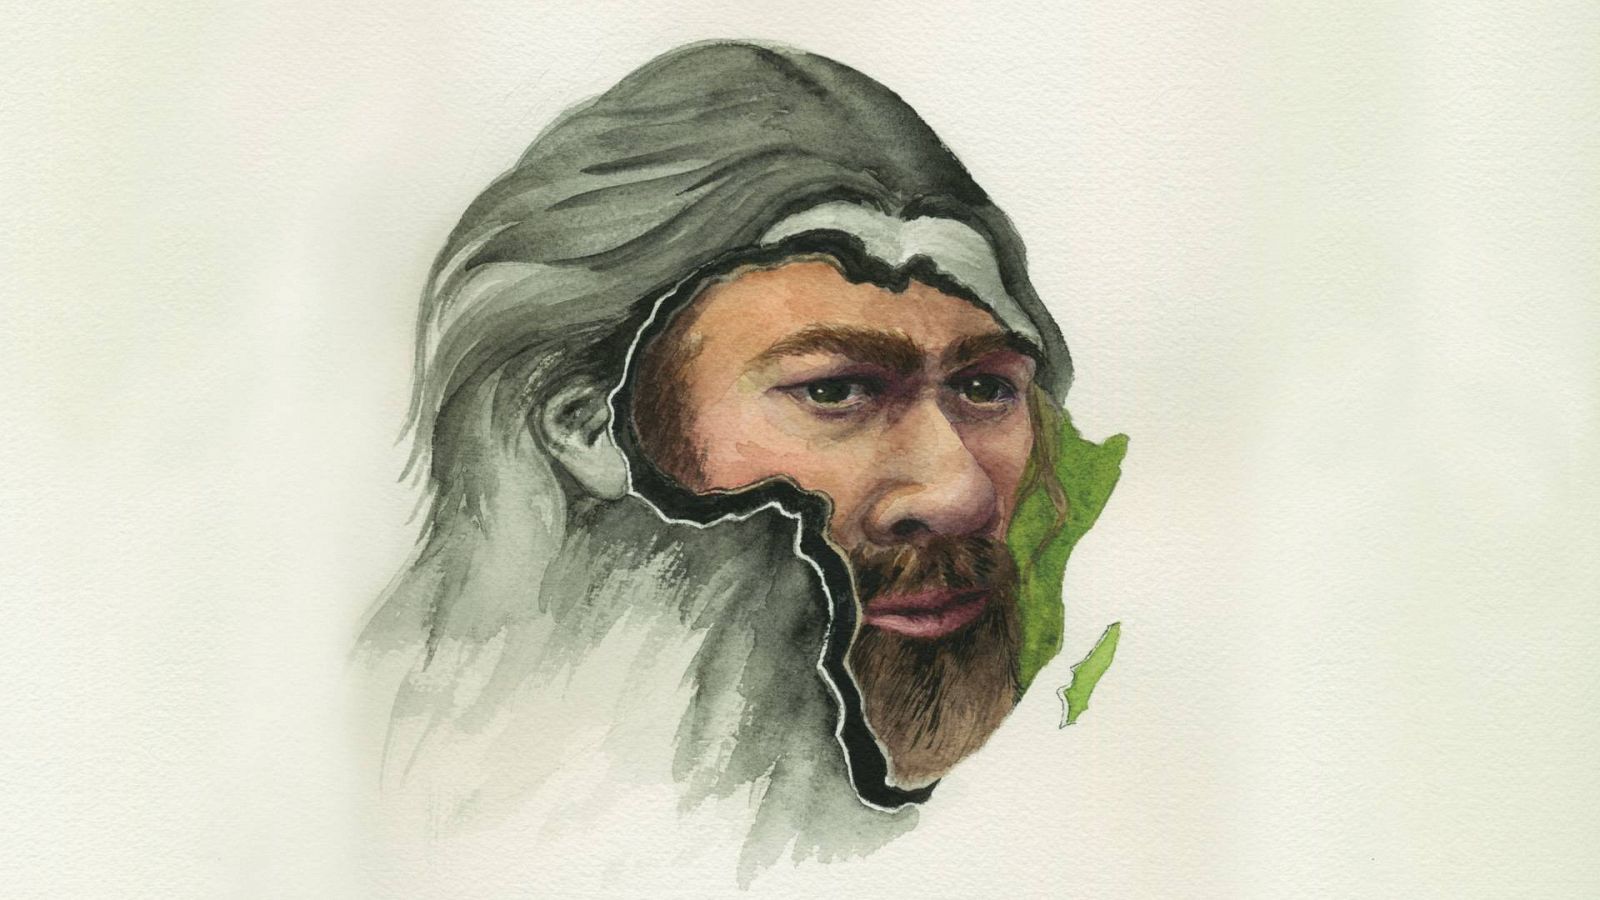 La ascendencia neandertal en los Homo sapiens africanos es mayor de lo que se pensaba.